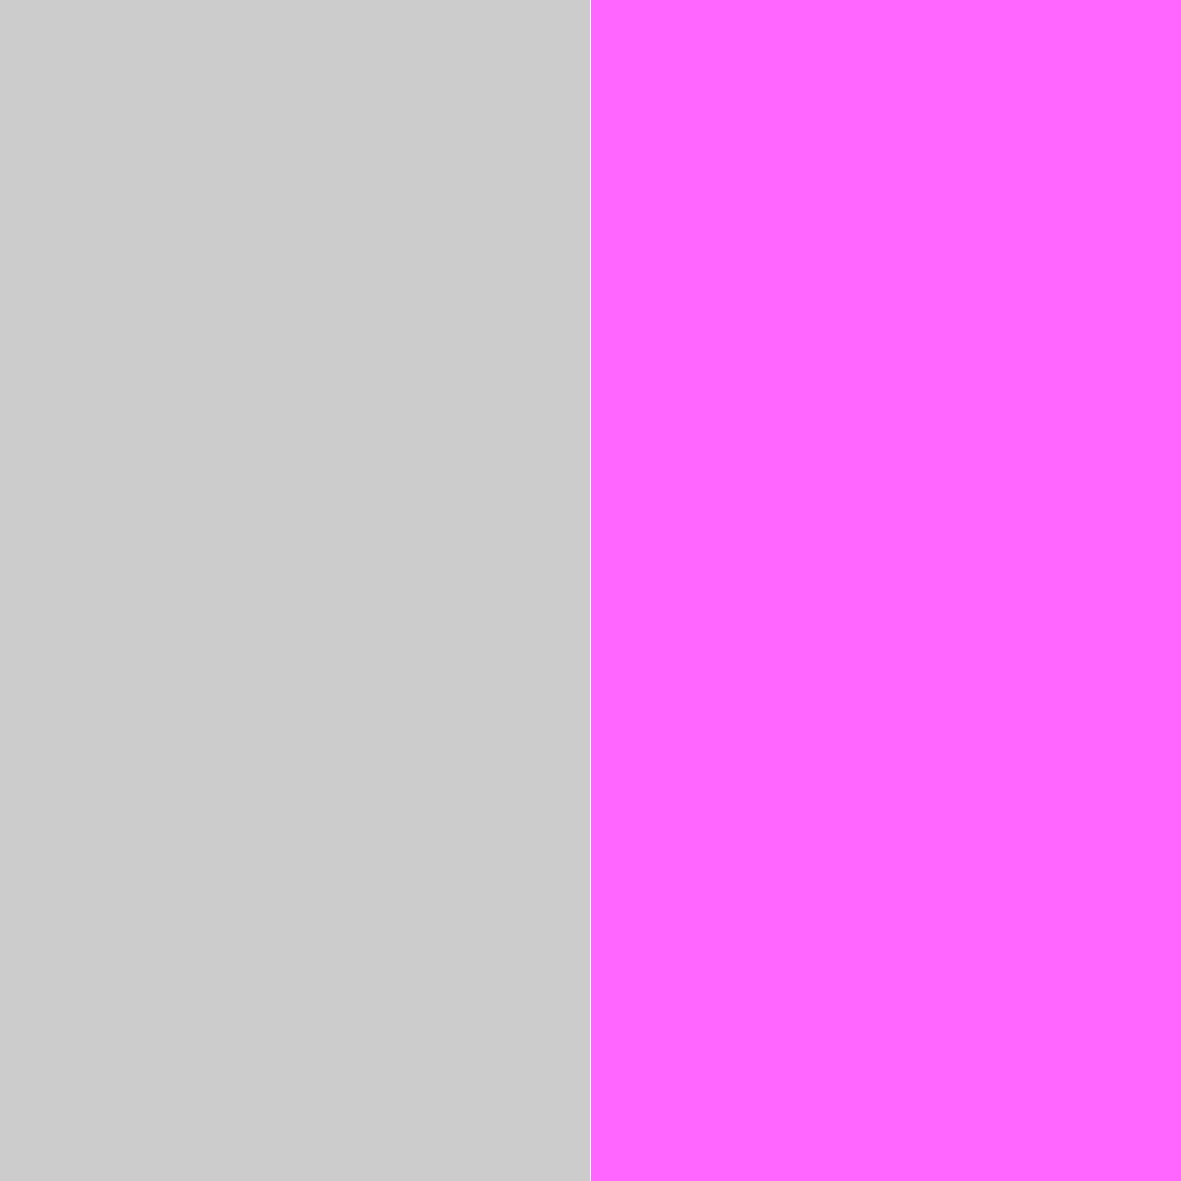 серый меланж/розовая орхидея_CCCCCC/FF66FF